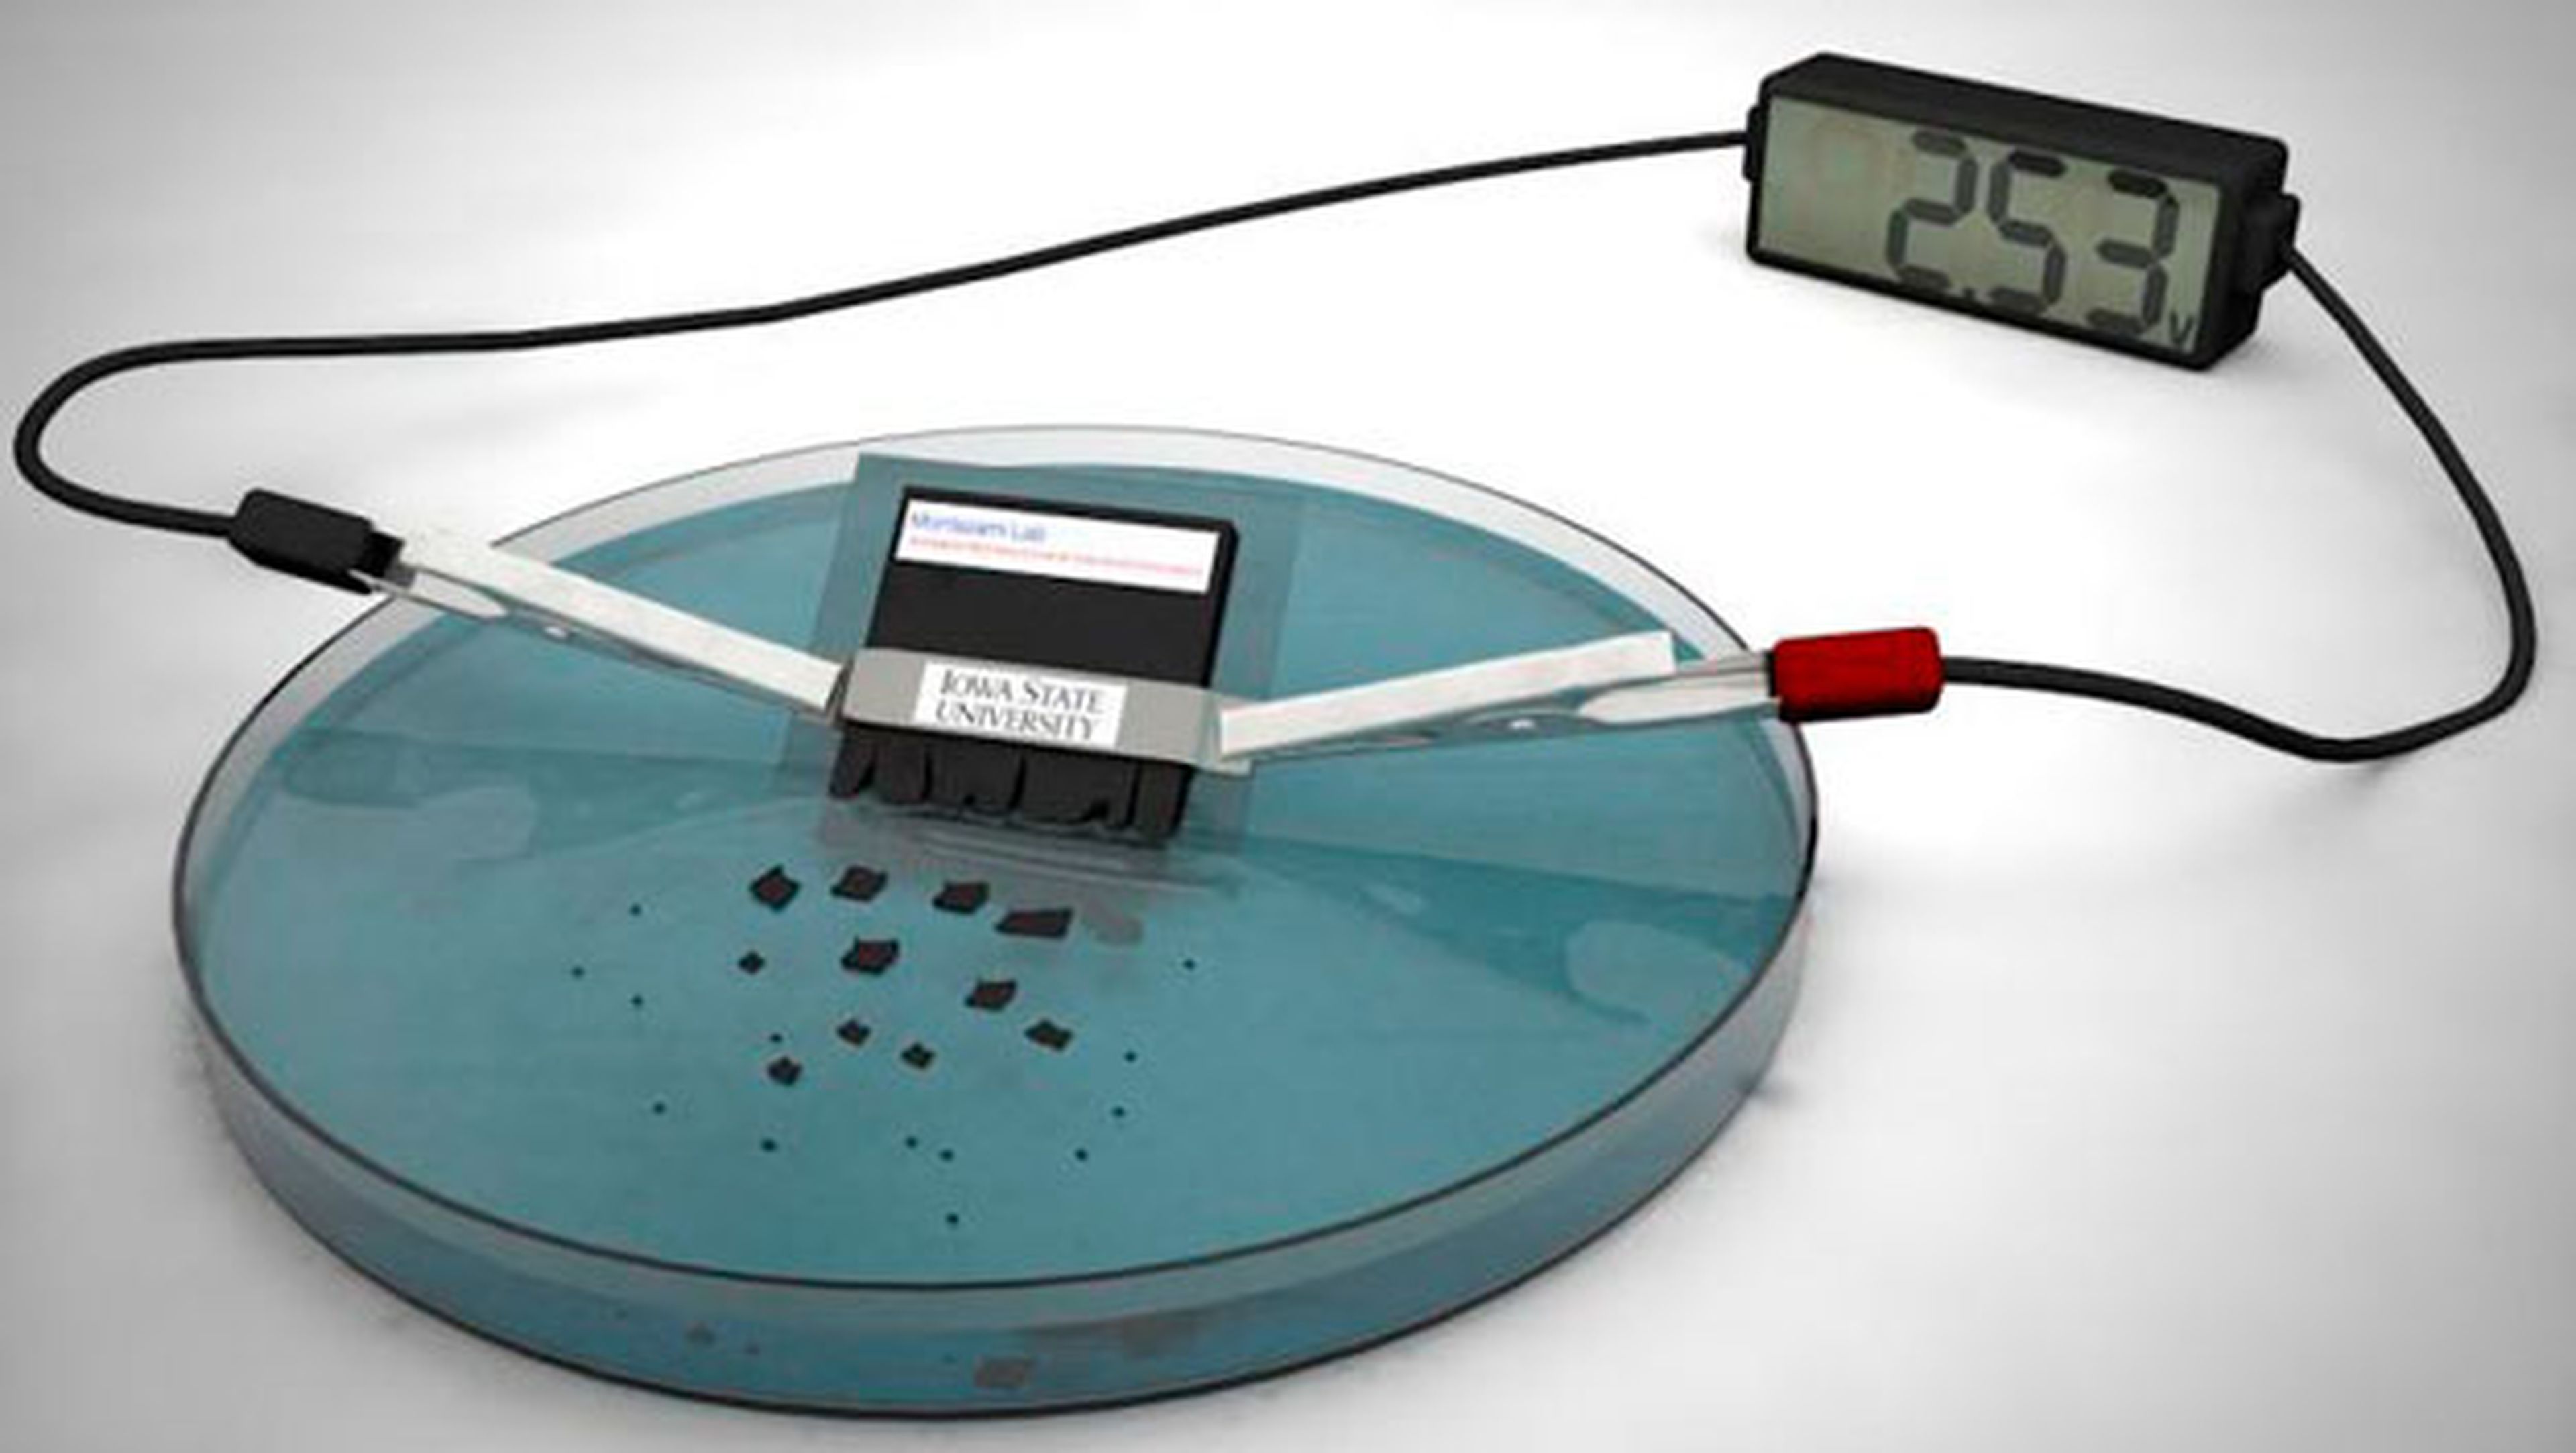 Descarte transmitir en casa Desarrollan una batería que se puede disolver en agua | Computer Hoy